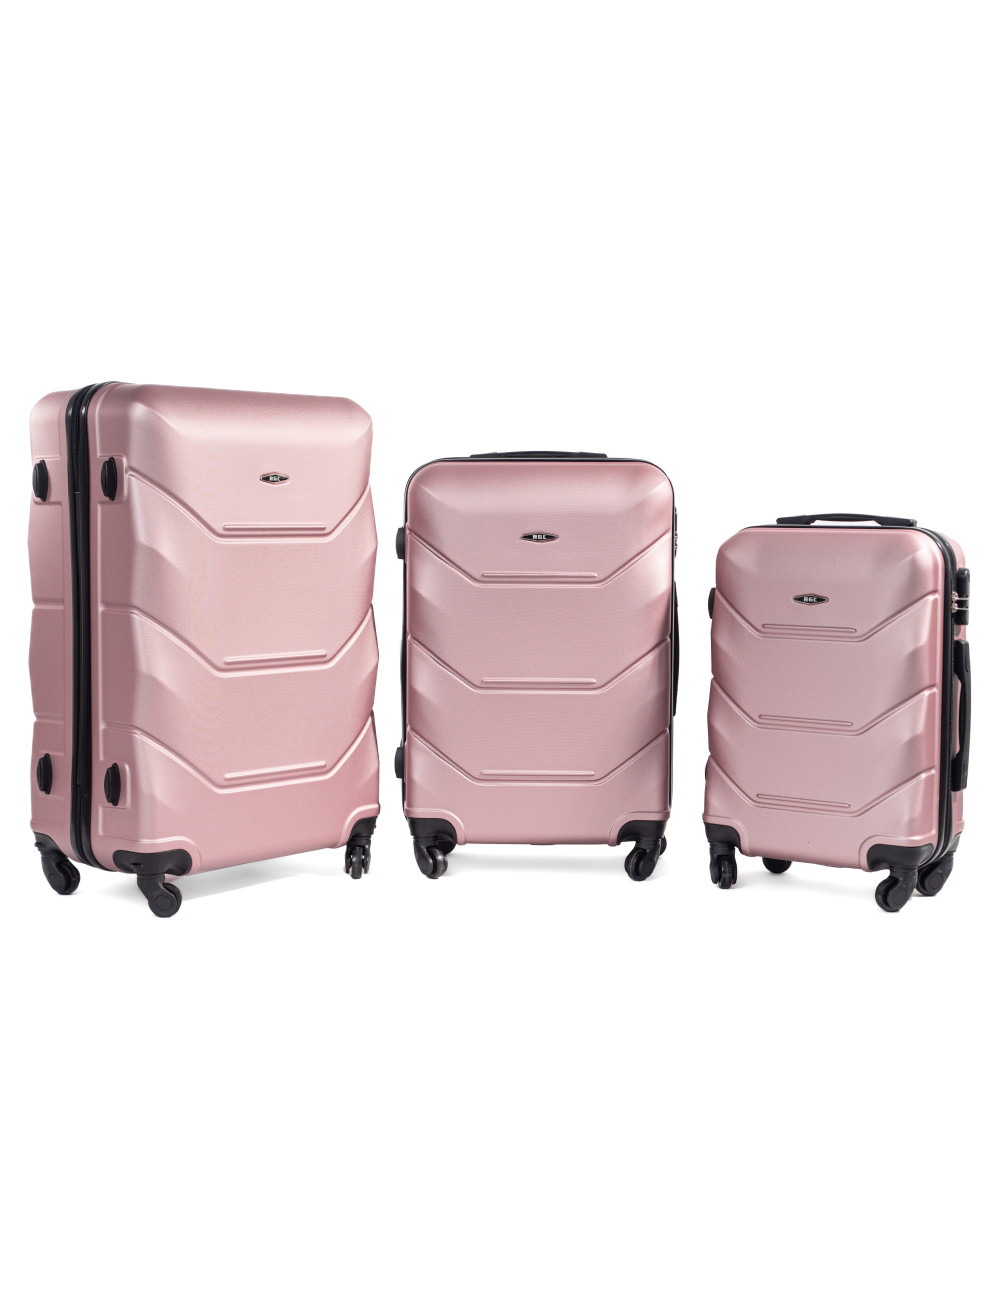 Zestaw walizek podróżnych na kółkach 3w1 720 RGL - rose red